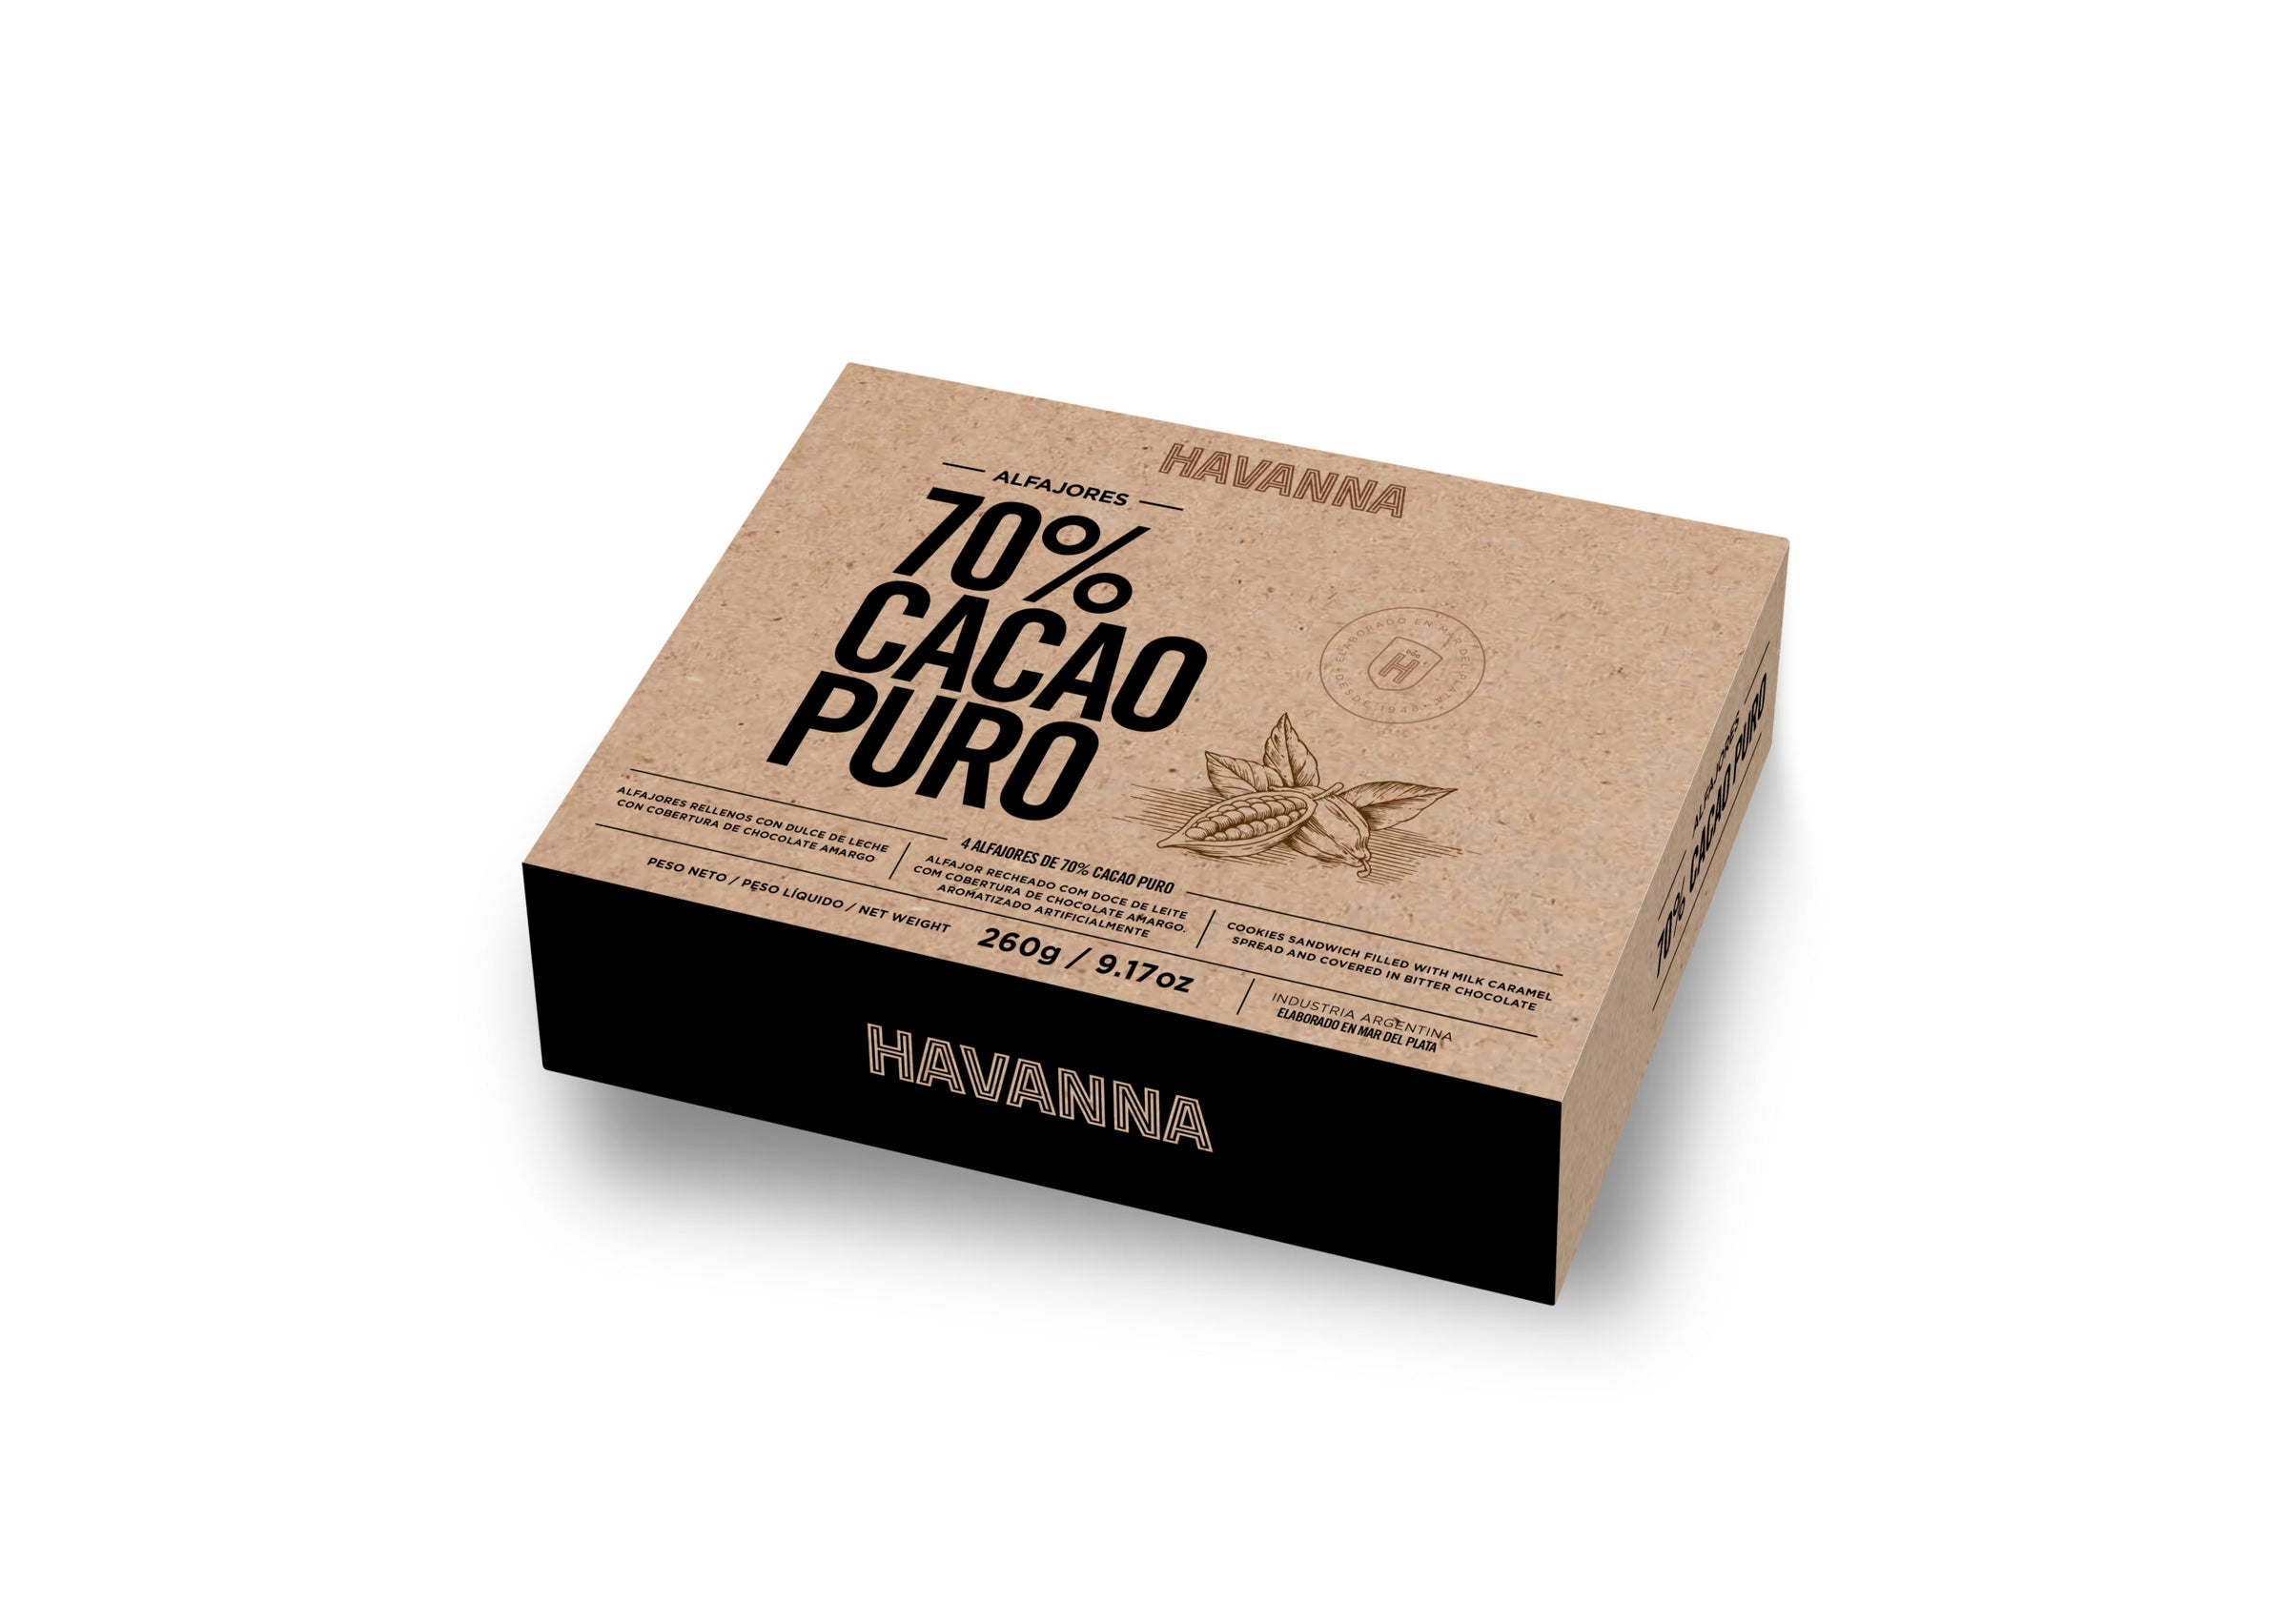 Havanna Alfajores 70% Cacao Puro - Argentinian Cookies